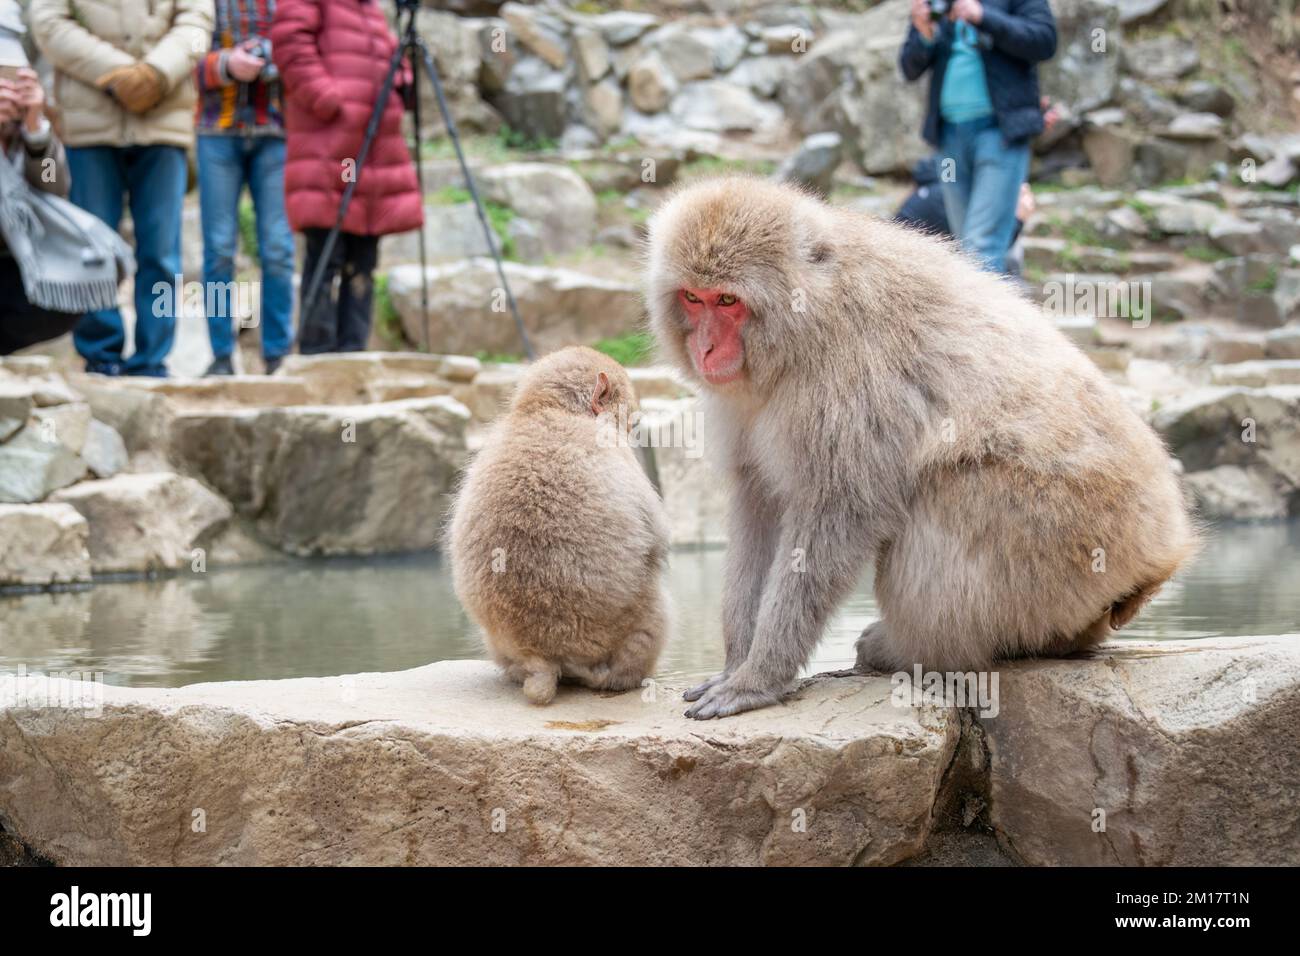 Scimmie giapponesi del Macaque del bambino e della madre che si siedono vicino alla sorgente calda. Turisti che scattano foto. Parco delle scimmie delle nevi, Nagano, Giappone. Foto Stock